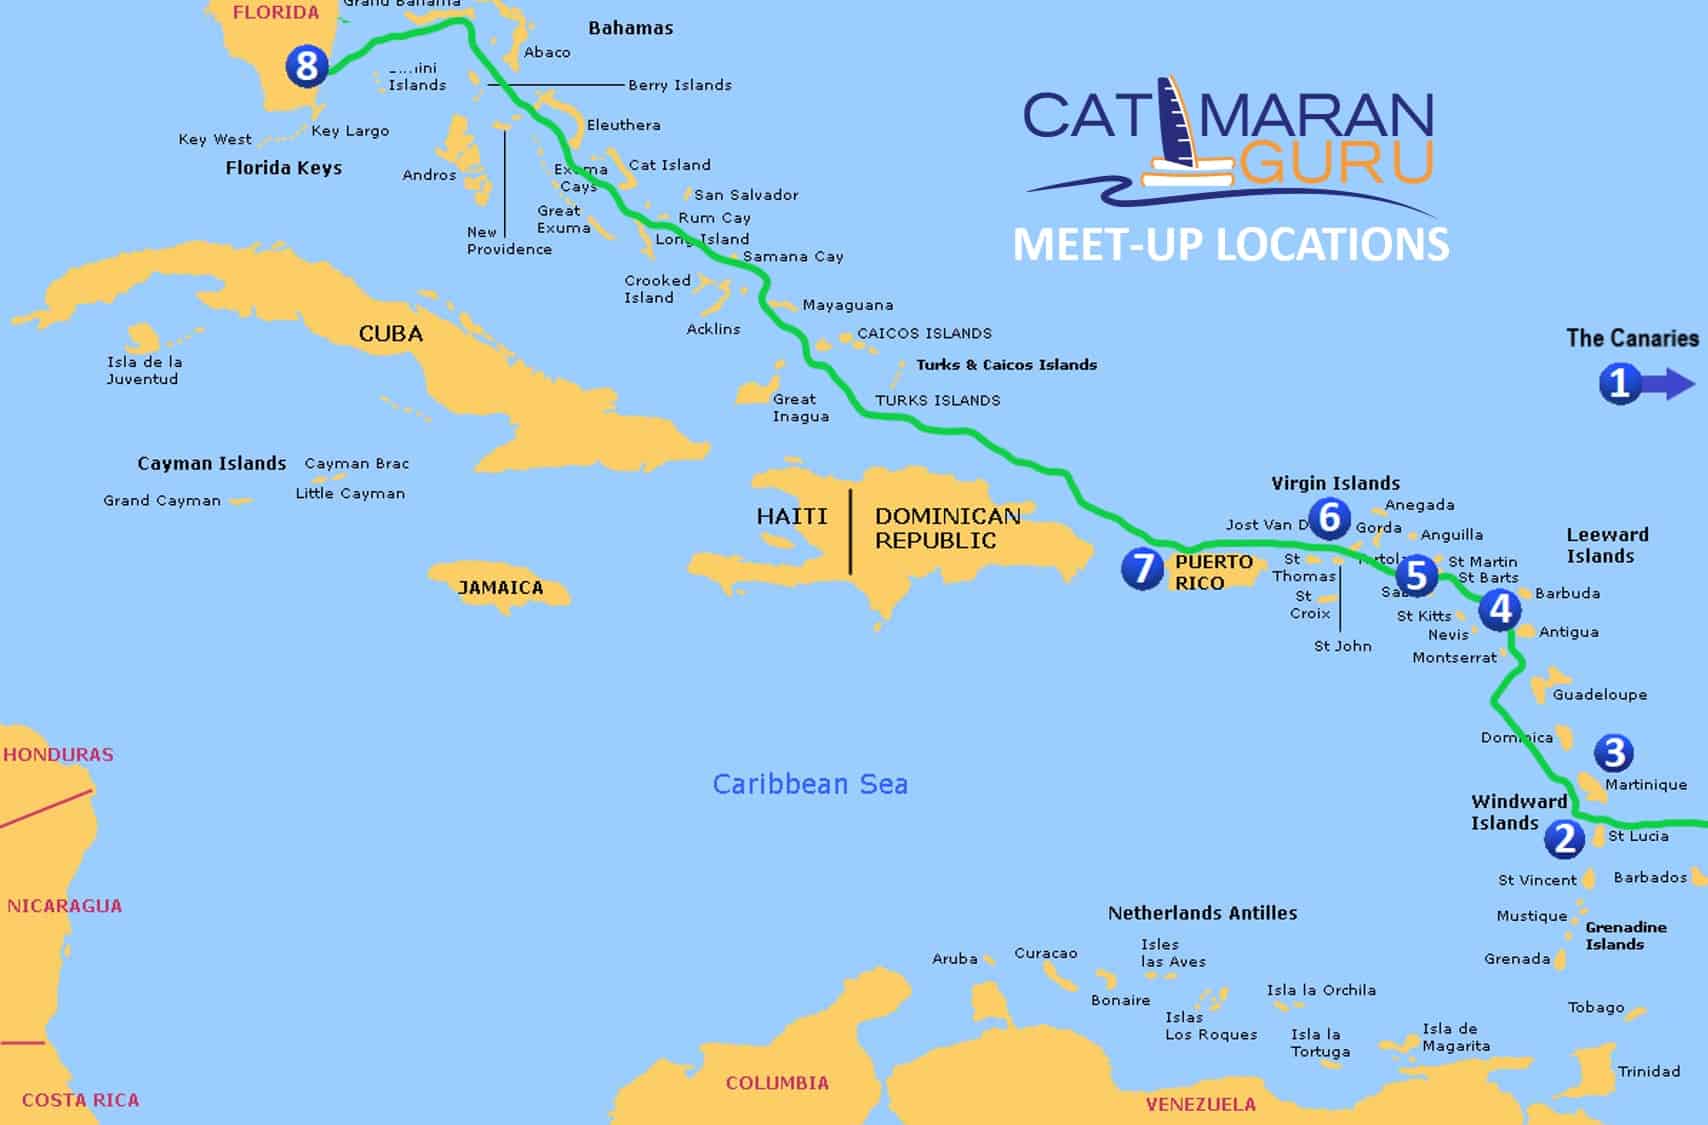 catamaran guru 2019 2020 meet up locations map